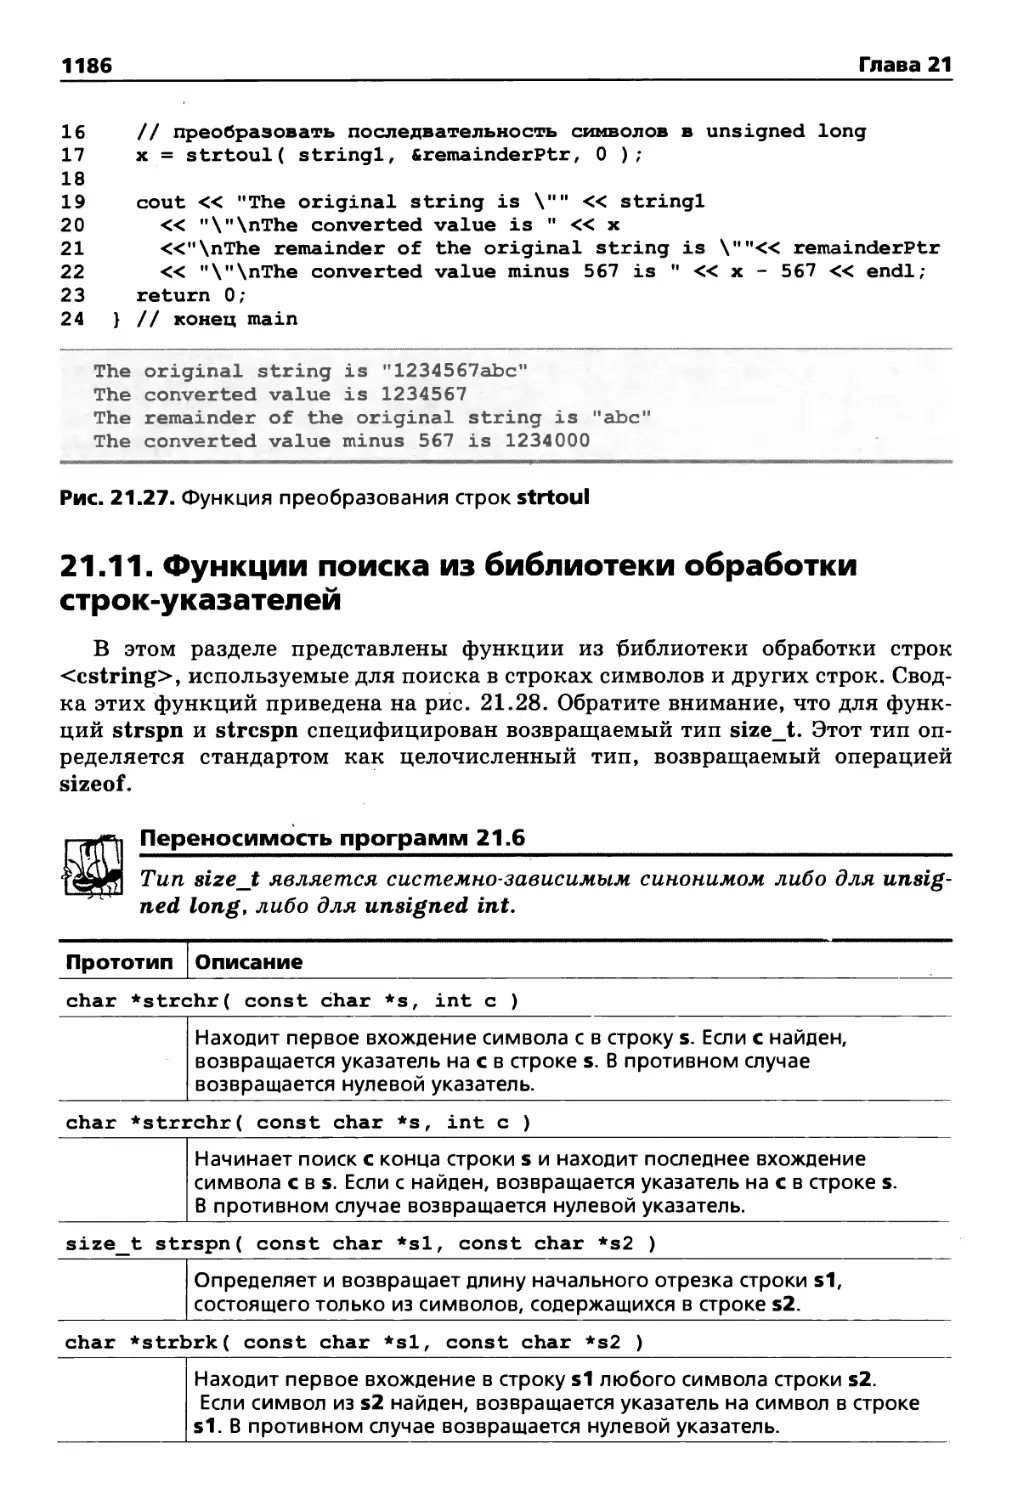 21.11. Функции поиска из библиотеки обработки строк-указателей .